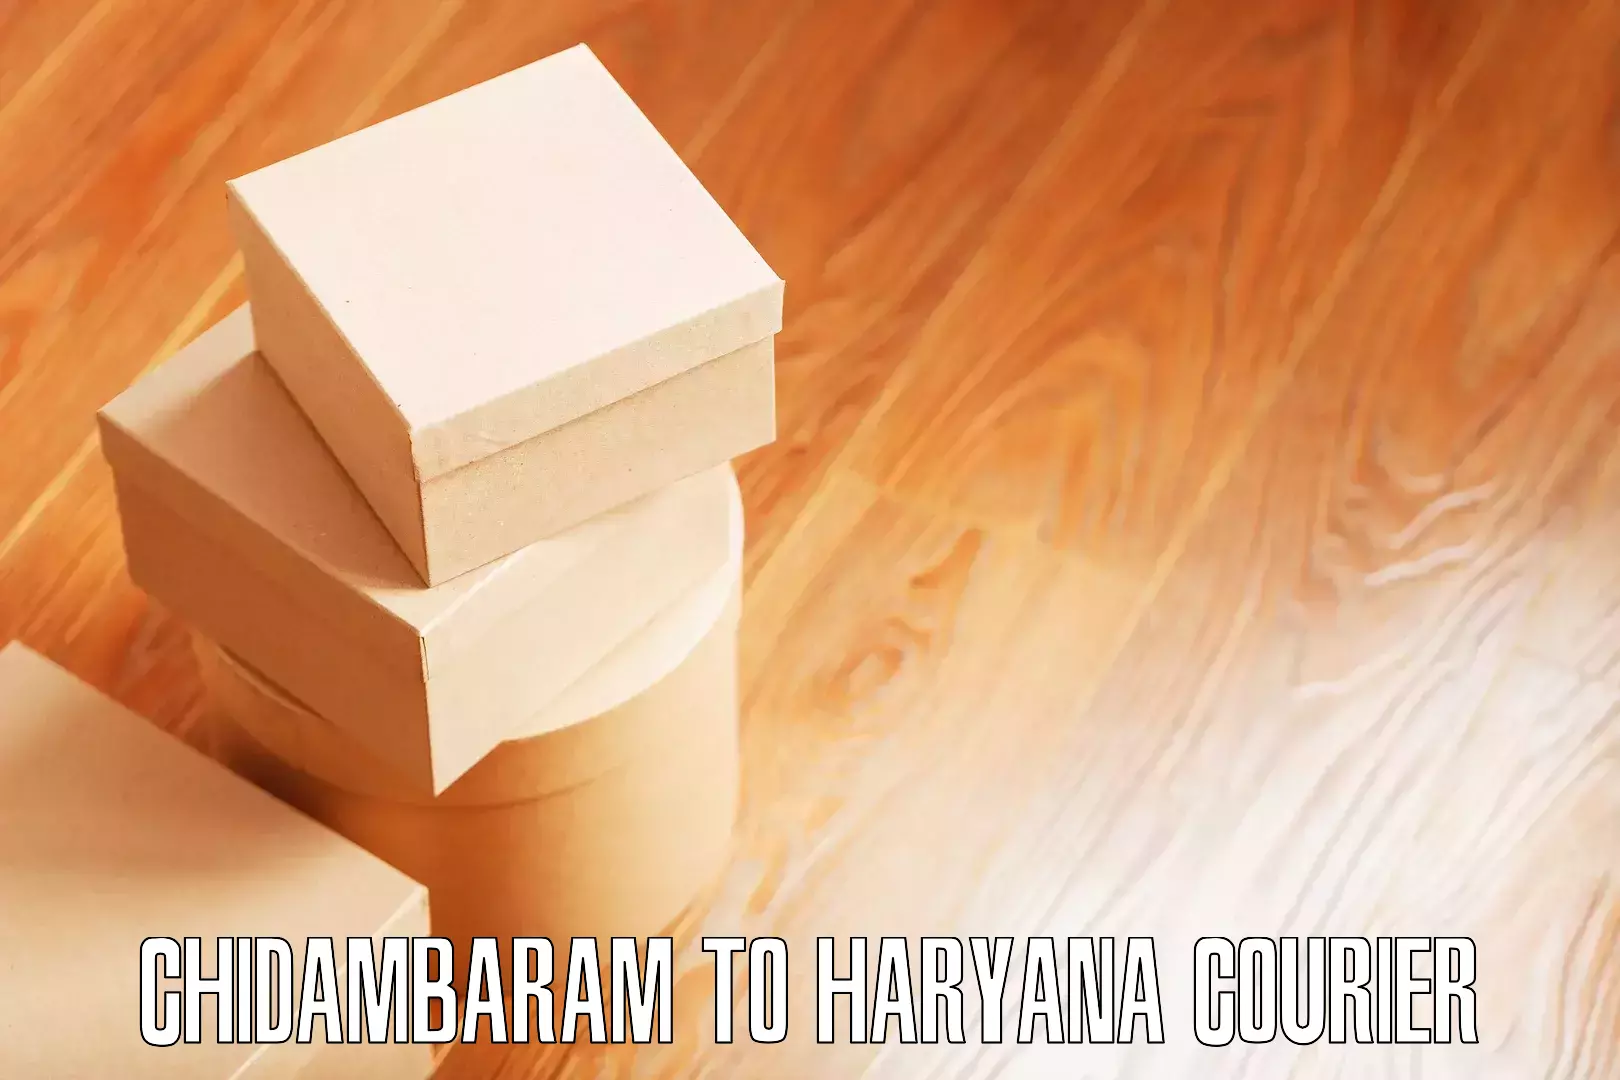 Furniture moving solutions Chidambaram to Haryana